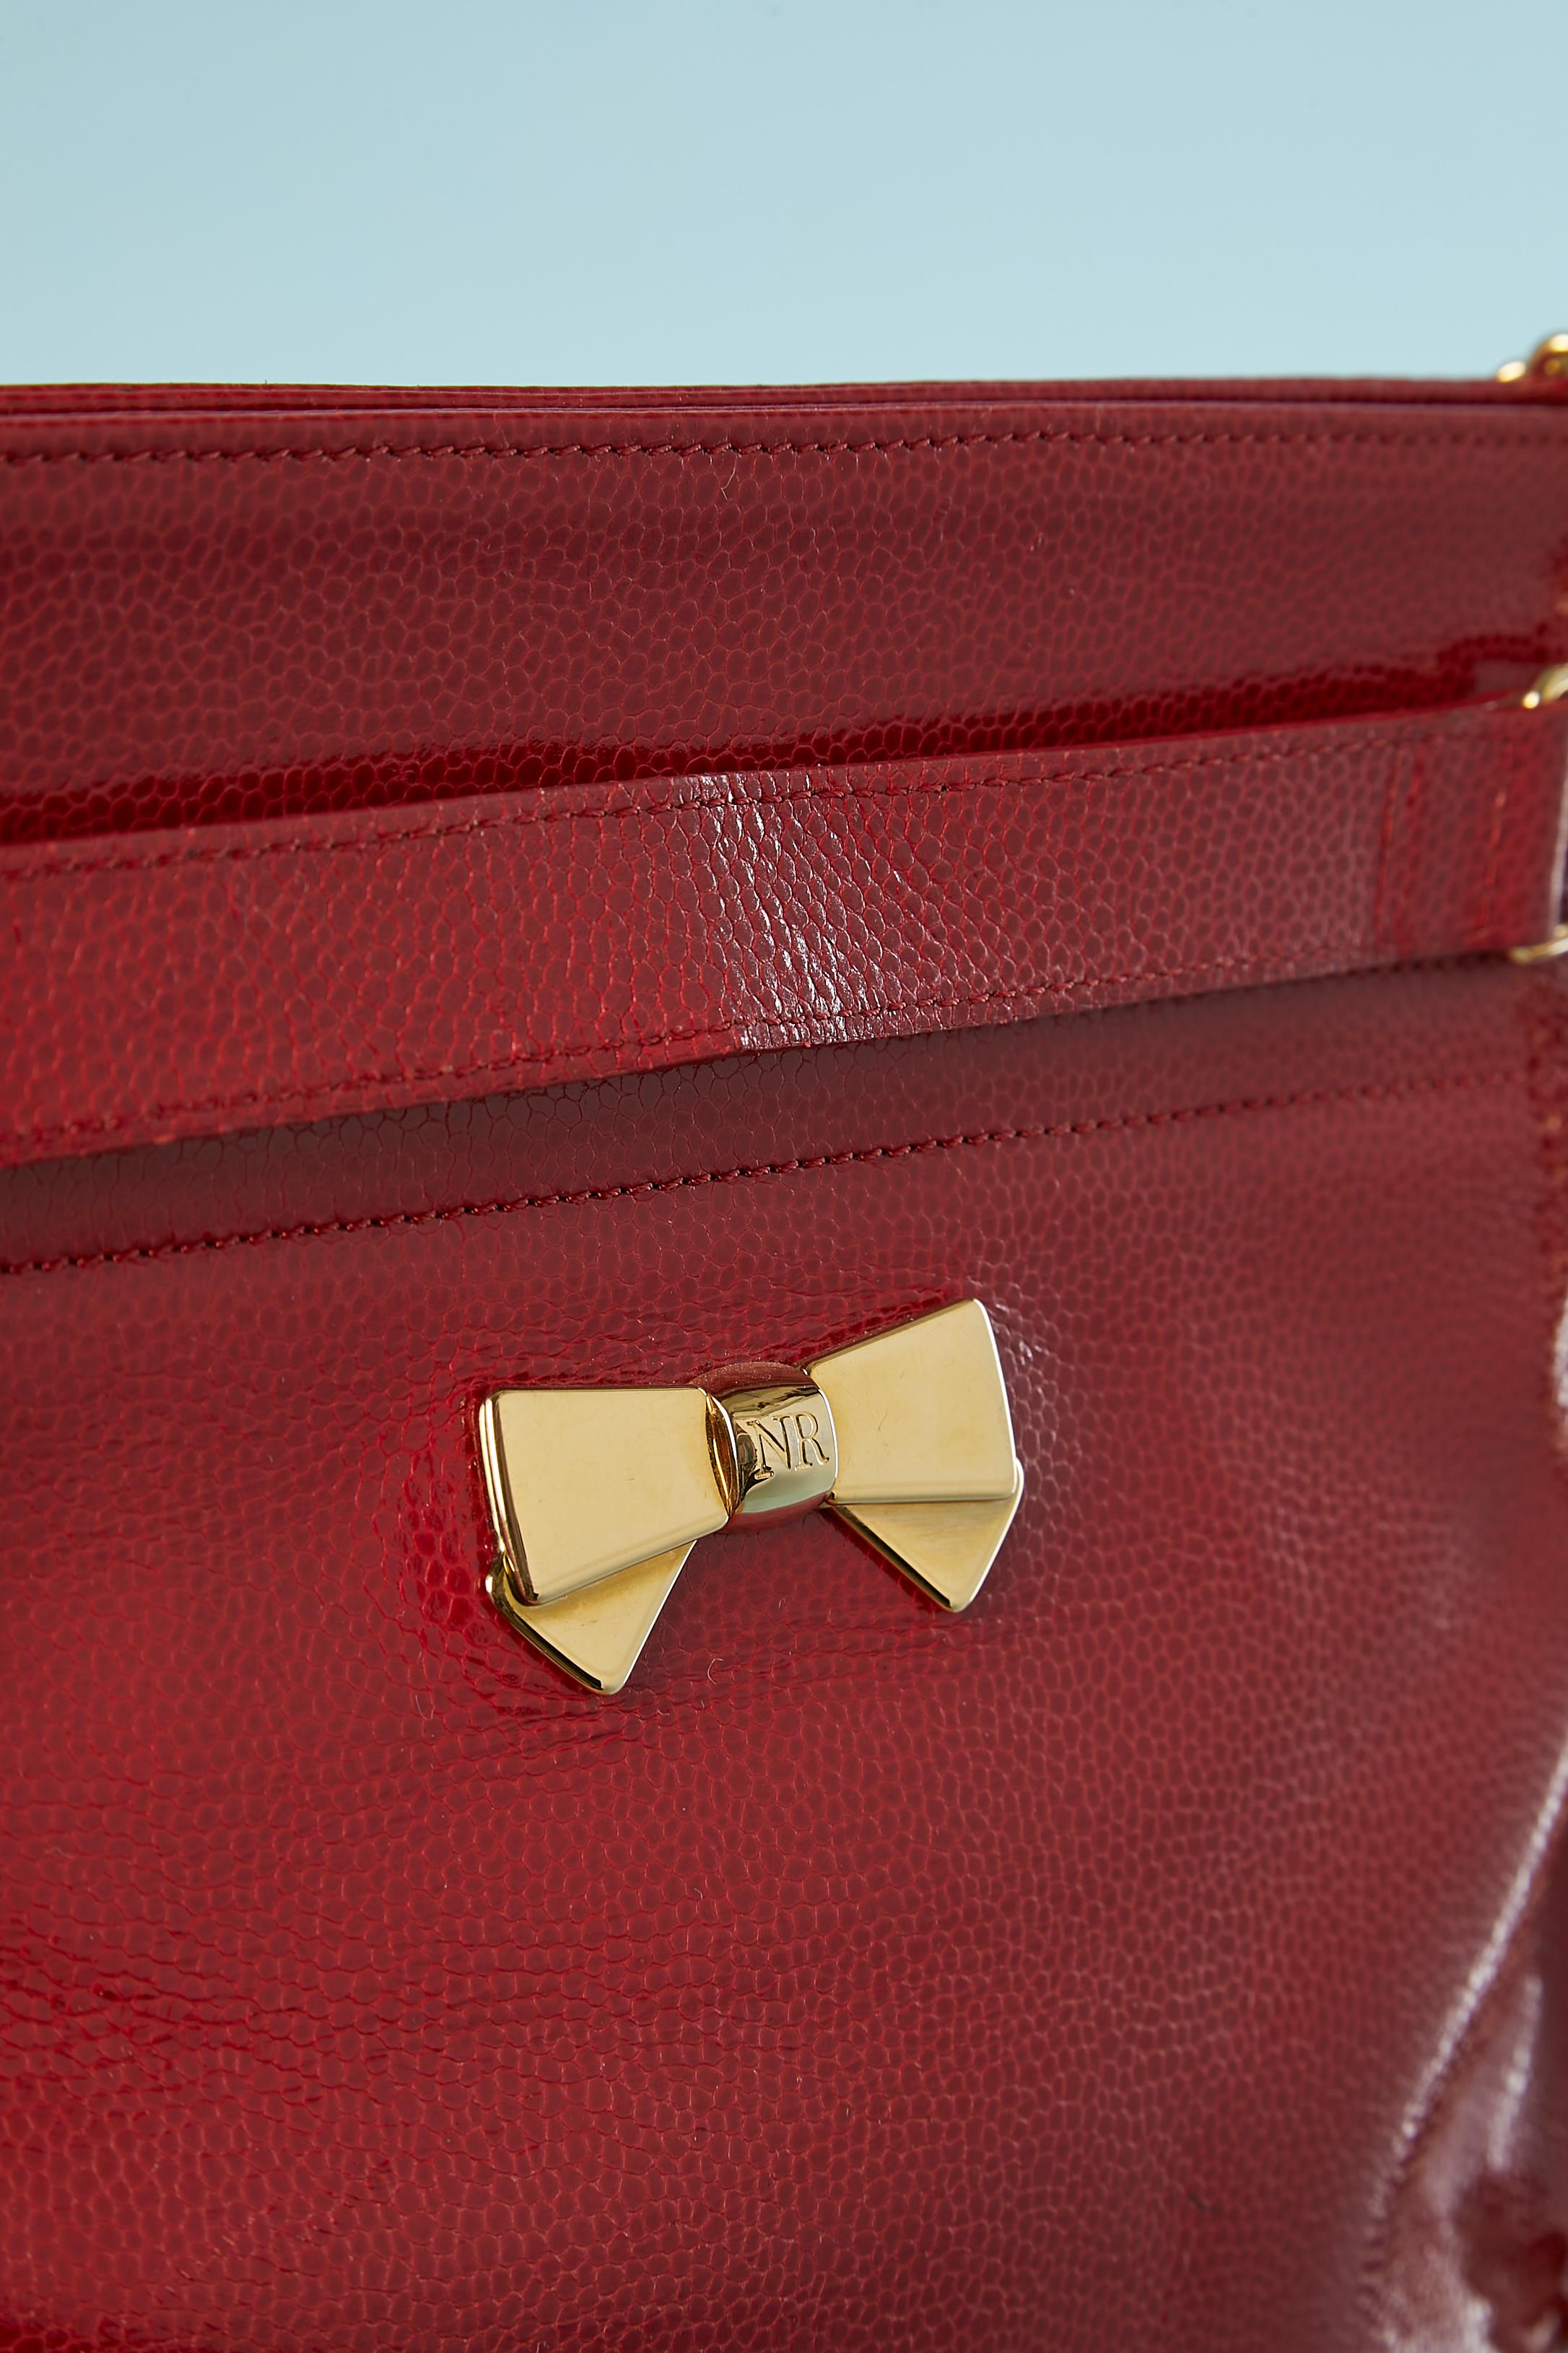 Rote Umhängetasche aus glänzendem Leder mit goldener Metallkette und Schleife. 
Schnappverschluss. 1 Tasche mit Reißverschluss innen. Schwarzes Lederfutter. Staubbeutel wird mitgeliefert.
Größe: 28 cm X 26 cm X 10 cm